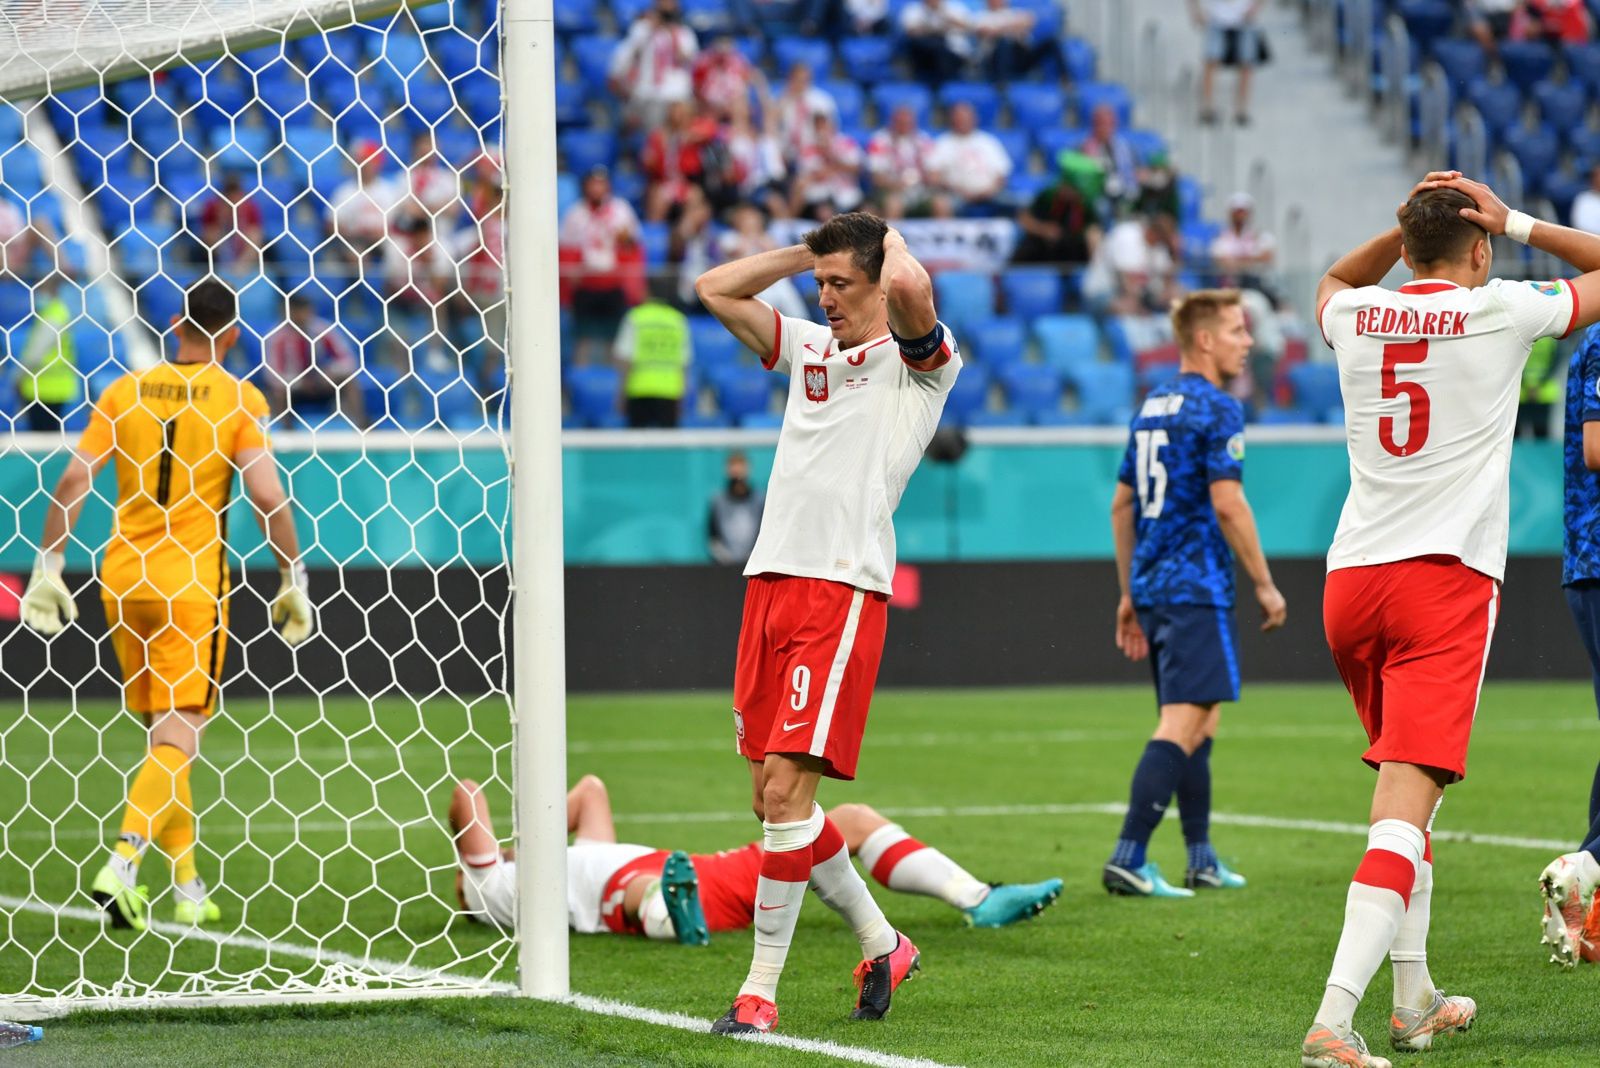 Żar poleje się z nieba. Polska zagra z Hiszpanią na Euro 2020 w prawdziwym piekle